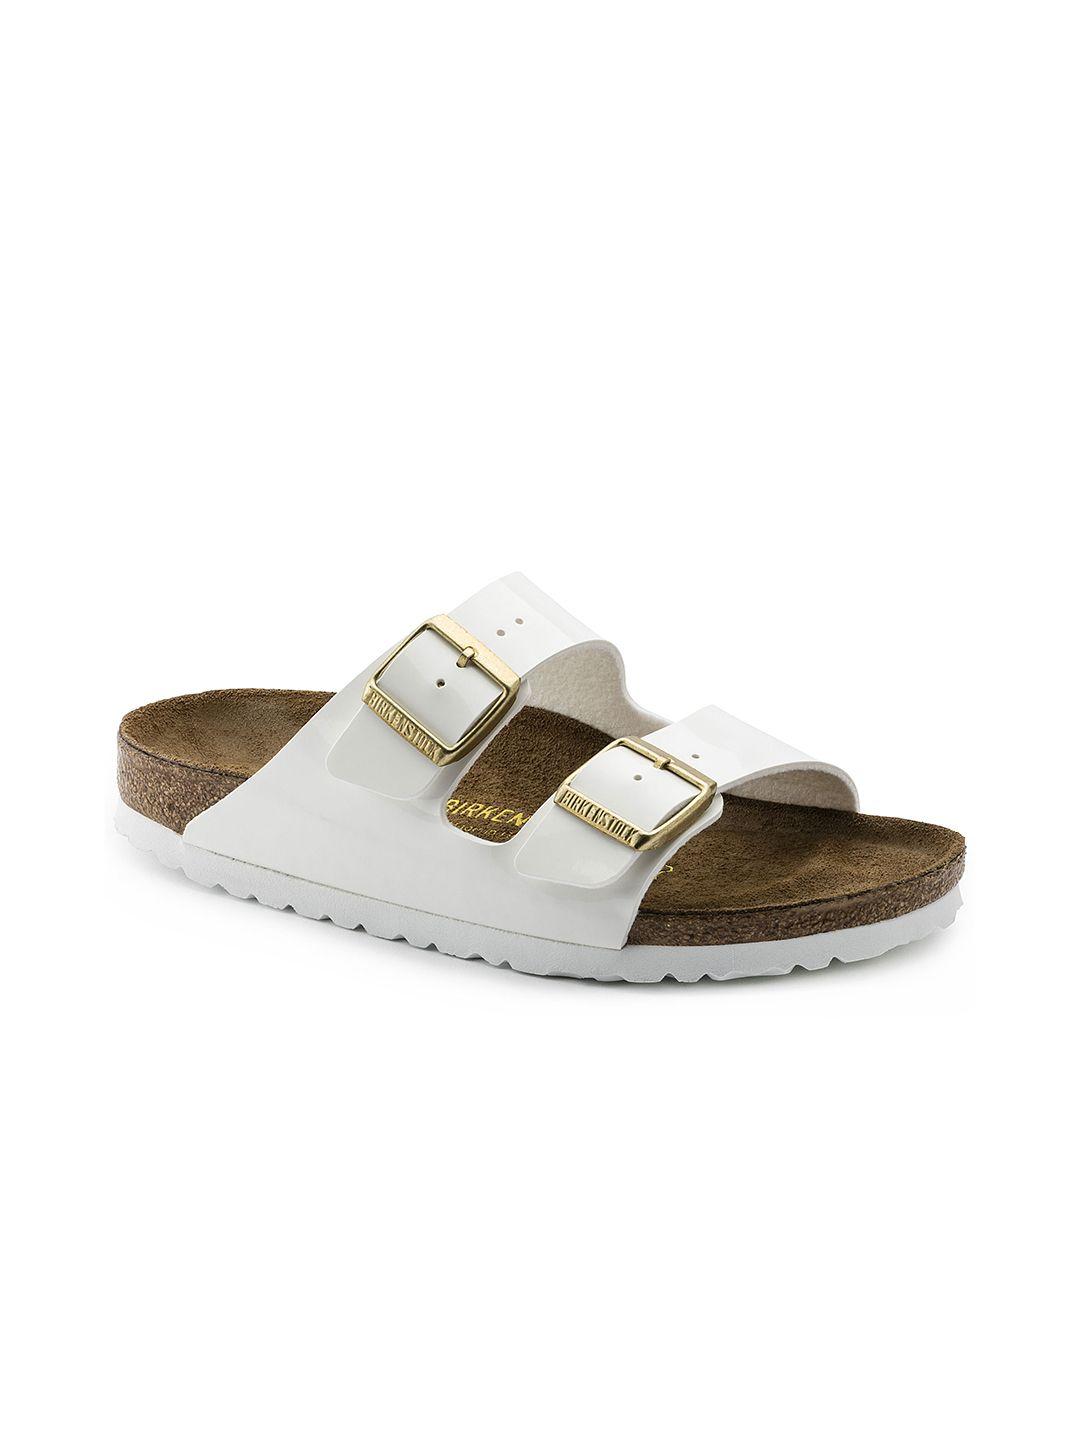 birkenstock unisex white solid arizona birko-flor comfort narrow width sandals